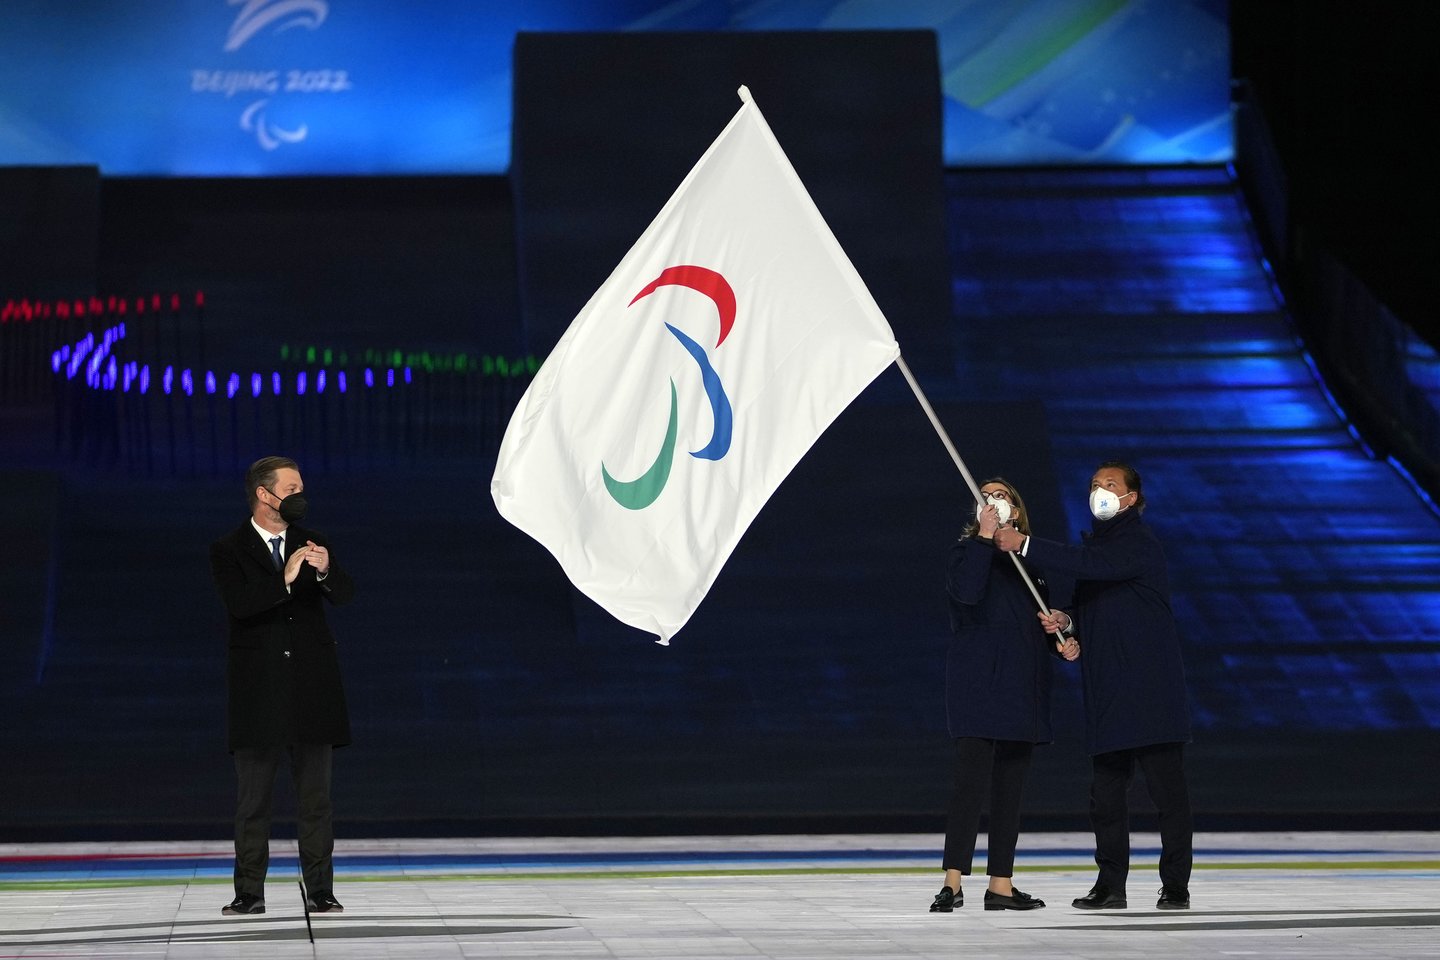  Tarptautinis paralimpinis komitetas suspendavo Rusiją ir Baltarusiją<br> AP/Scanpix nuotr.